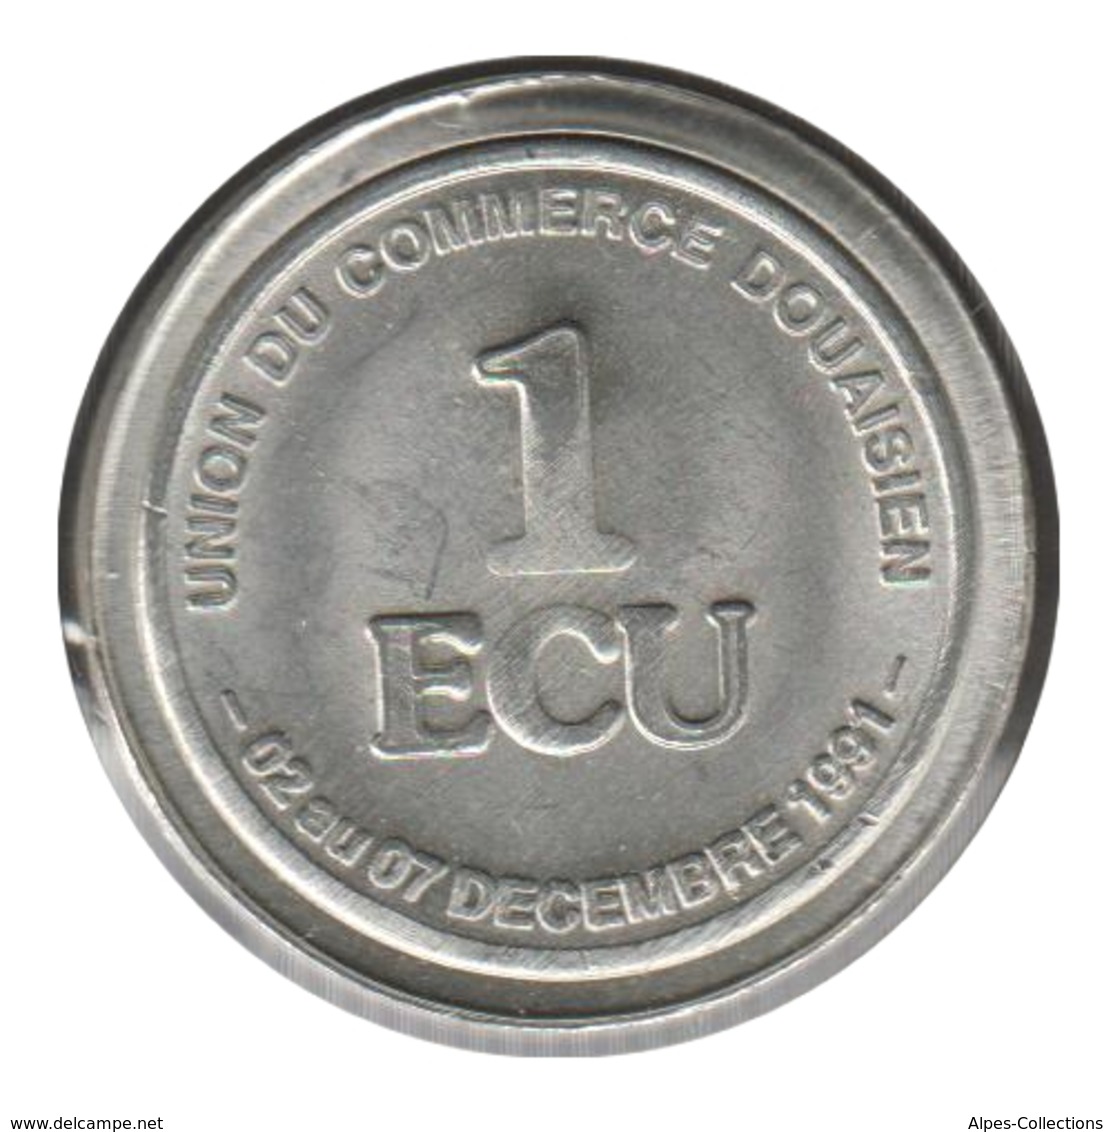 DOUAI - EC0010.4 - 1 ECU DES VILLES - Réf: NR - 1991 - Euros Des Villes